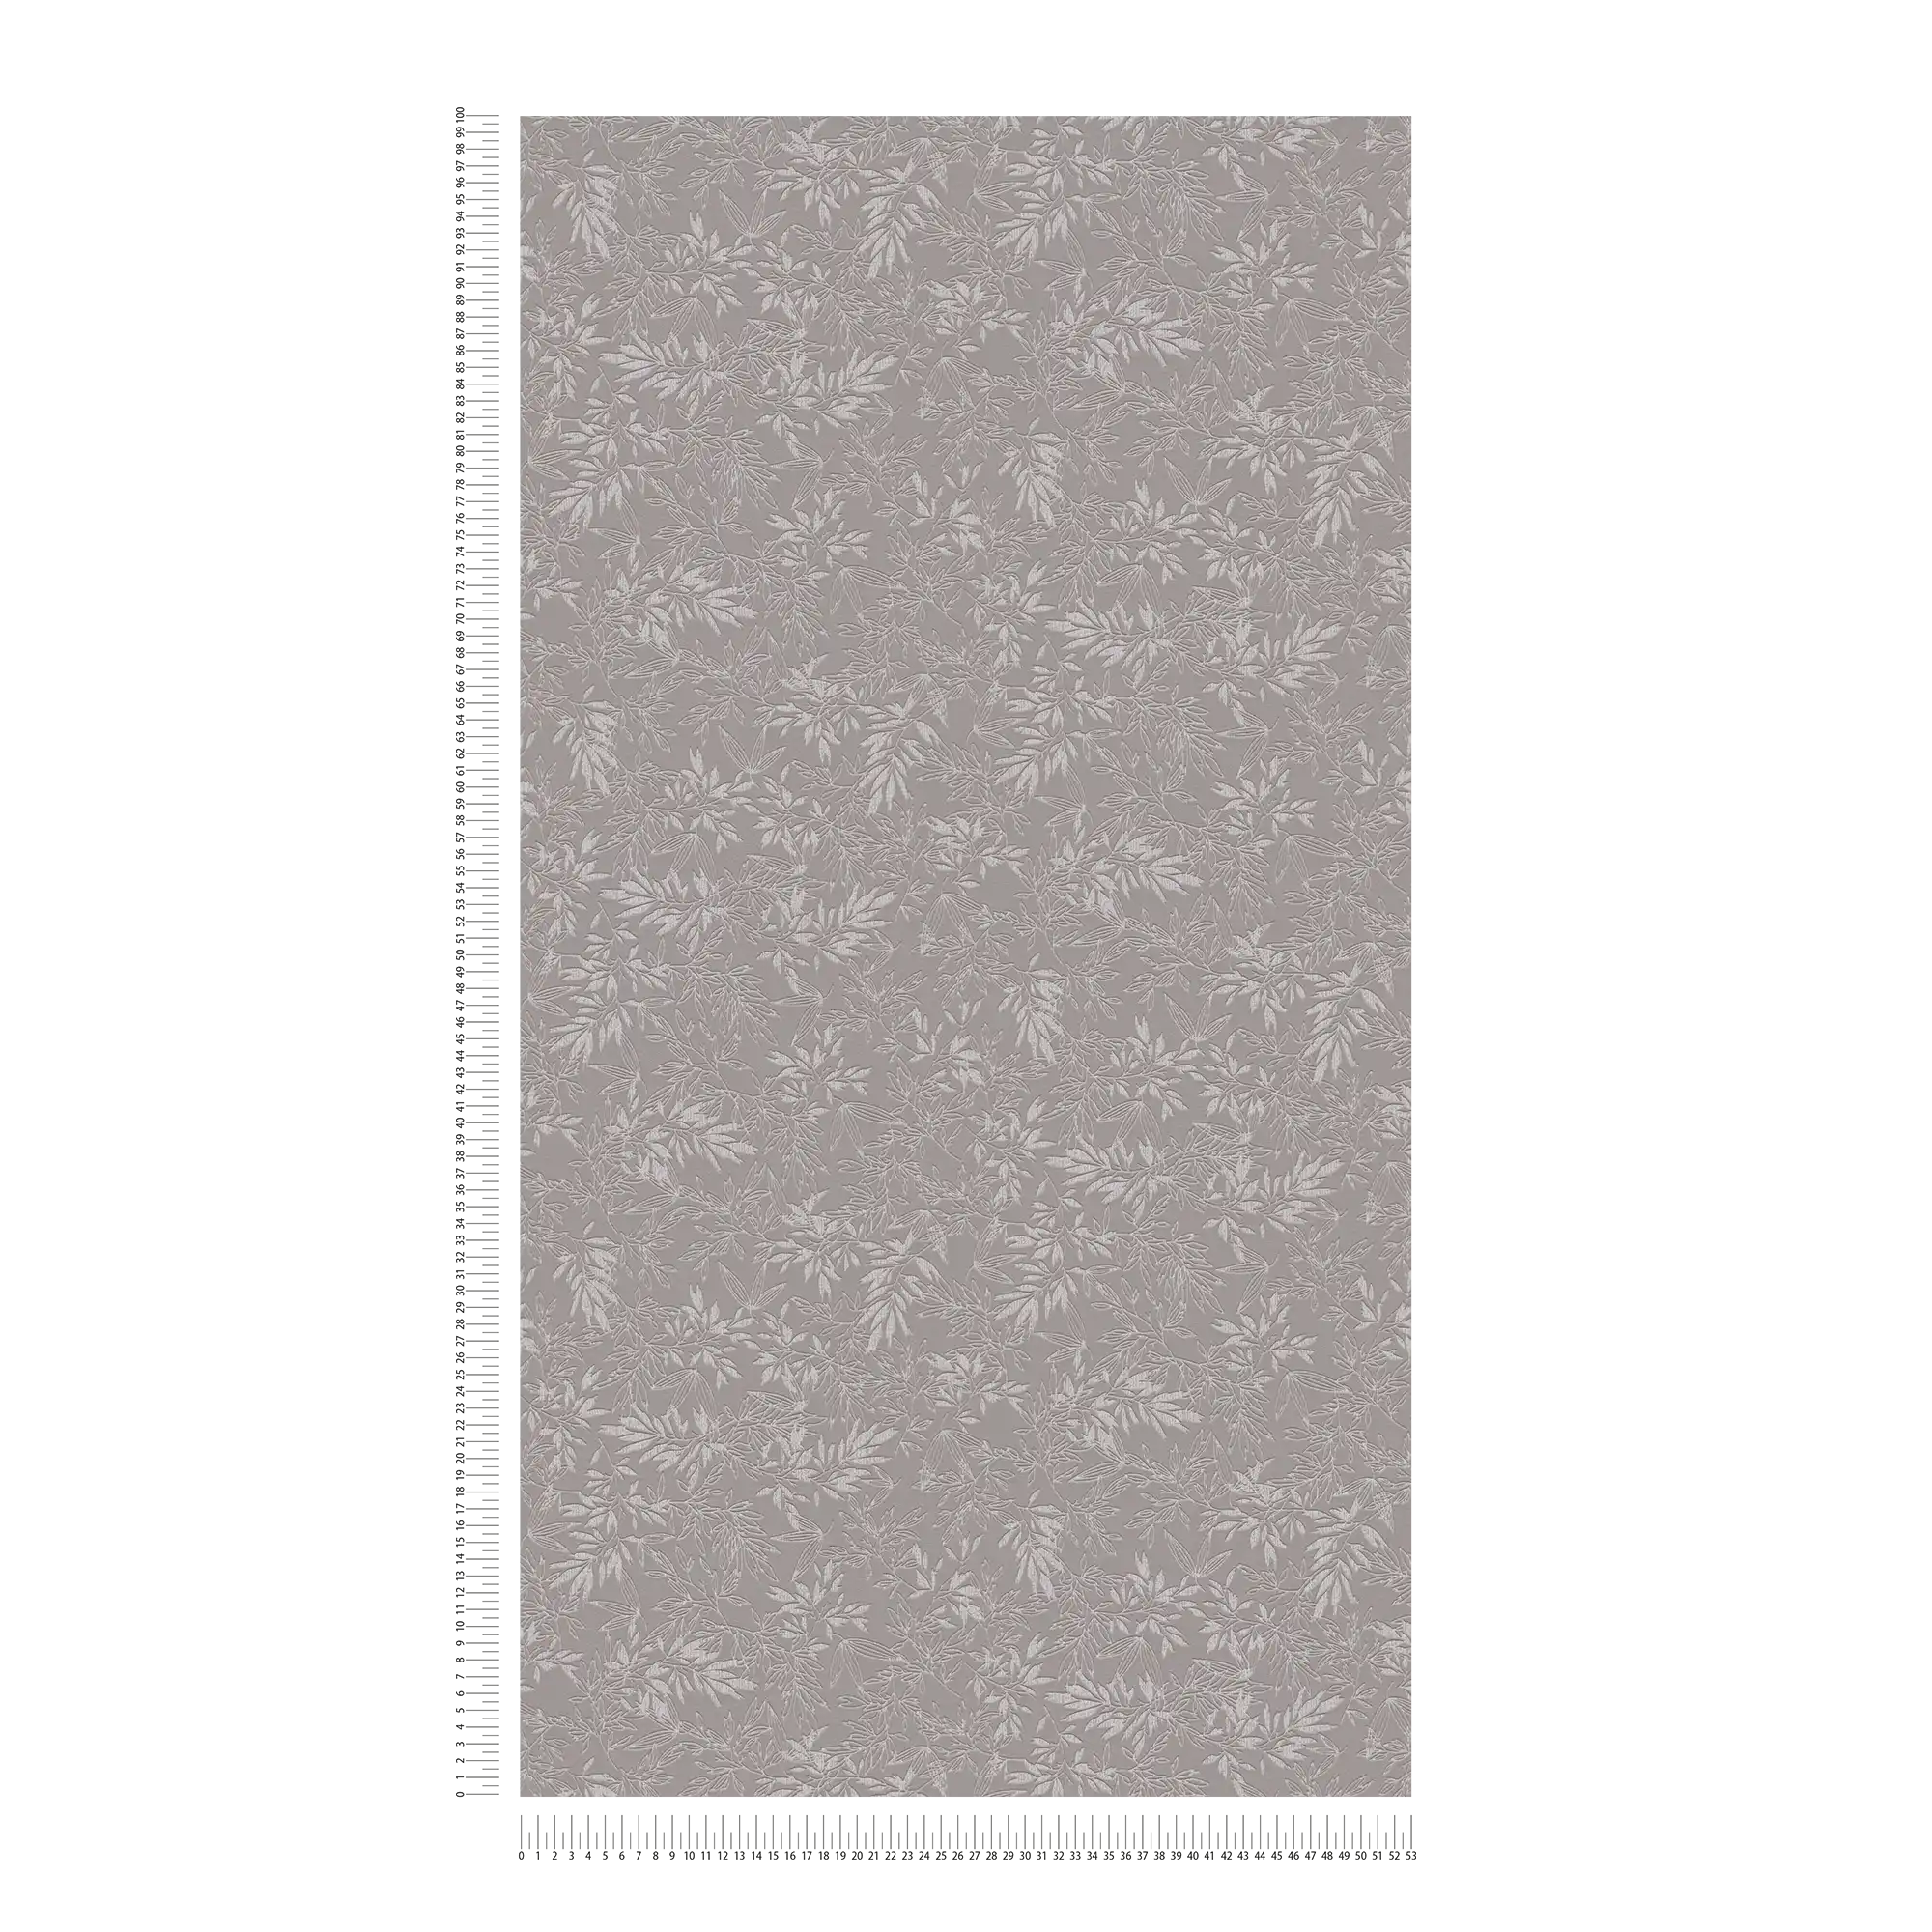             Feuilles papier peint avec structure mousse en mat - gris, gris clair
        